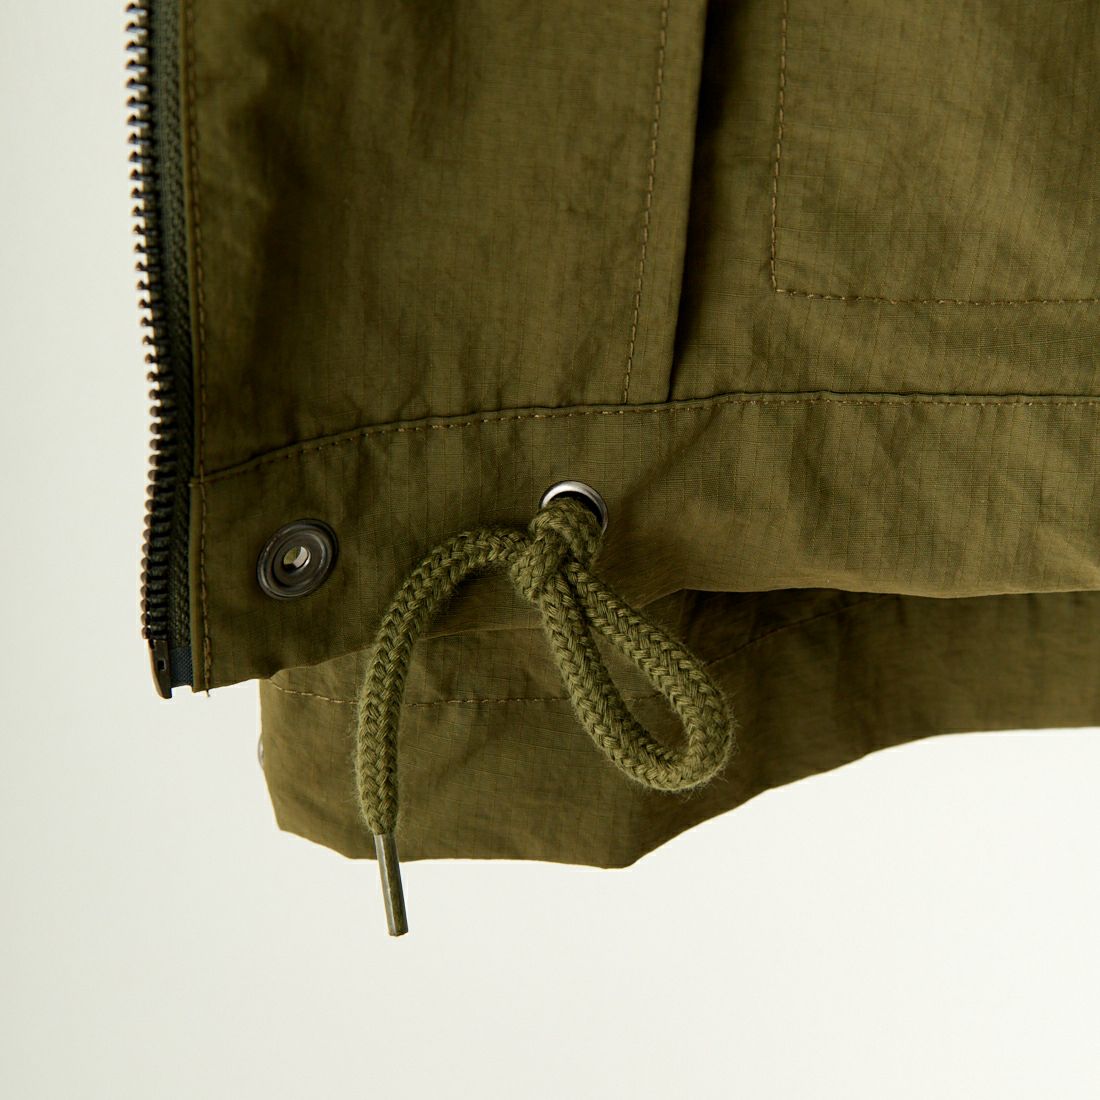 Jeans Factory Clothes [ジーンズファクトリークローズ] ウォッシャブルナイロンリップショートM-51ジャケット [JFC-241-011] OLIVE